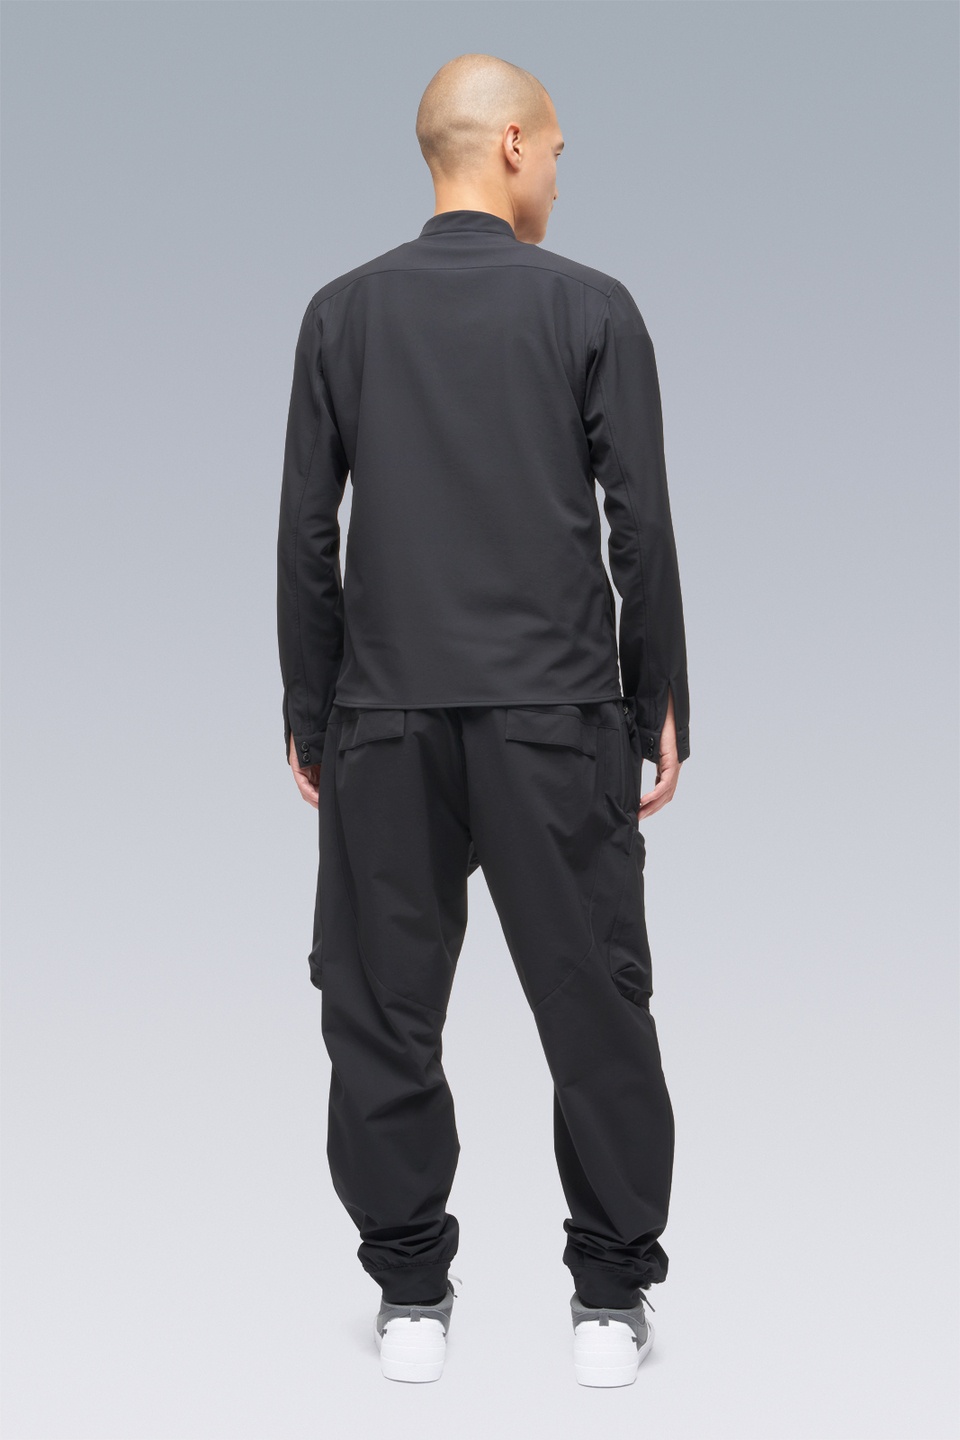 LA6B-DS schoeller® Dryskin™ Long Sleeve Shirt Schwarzrot - 21